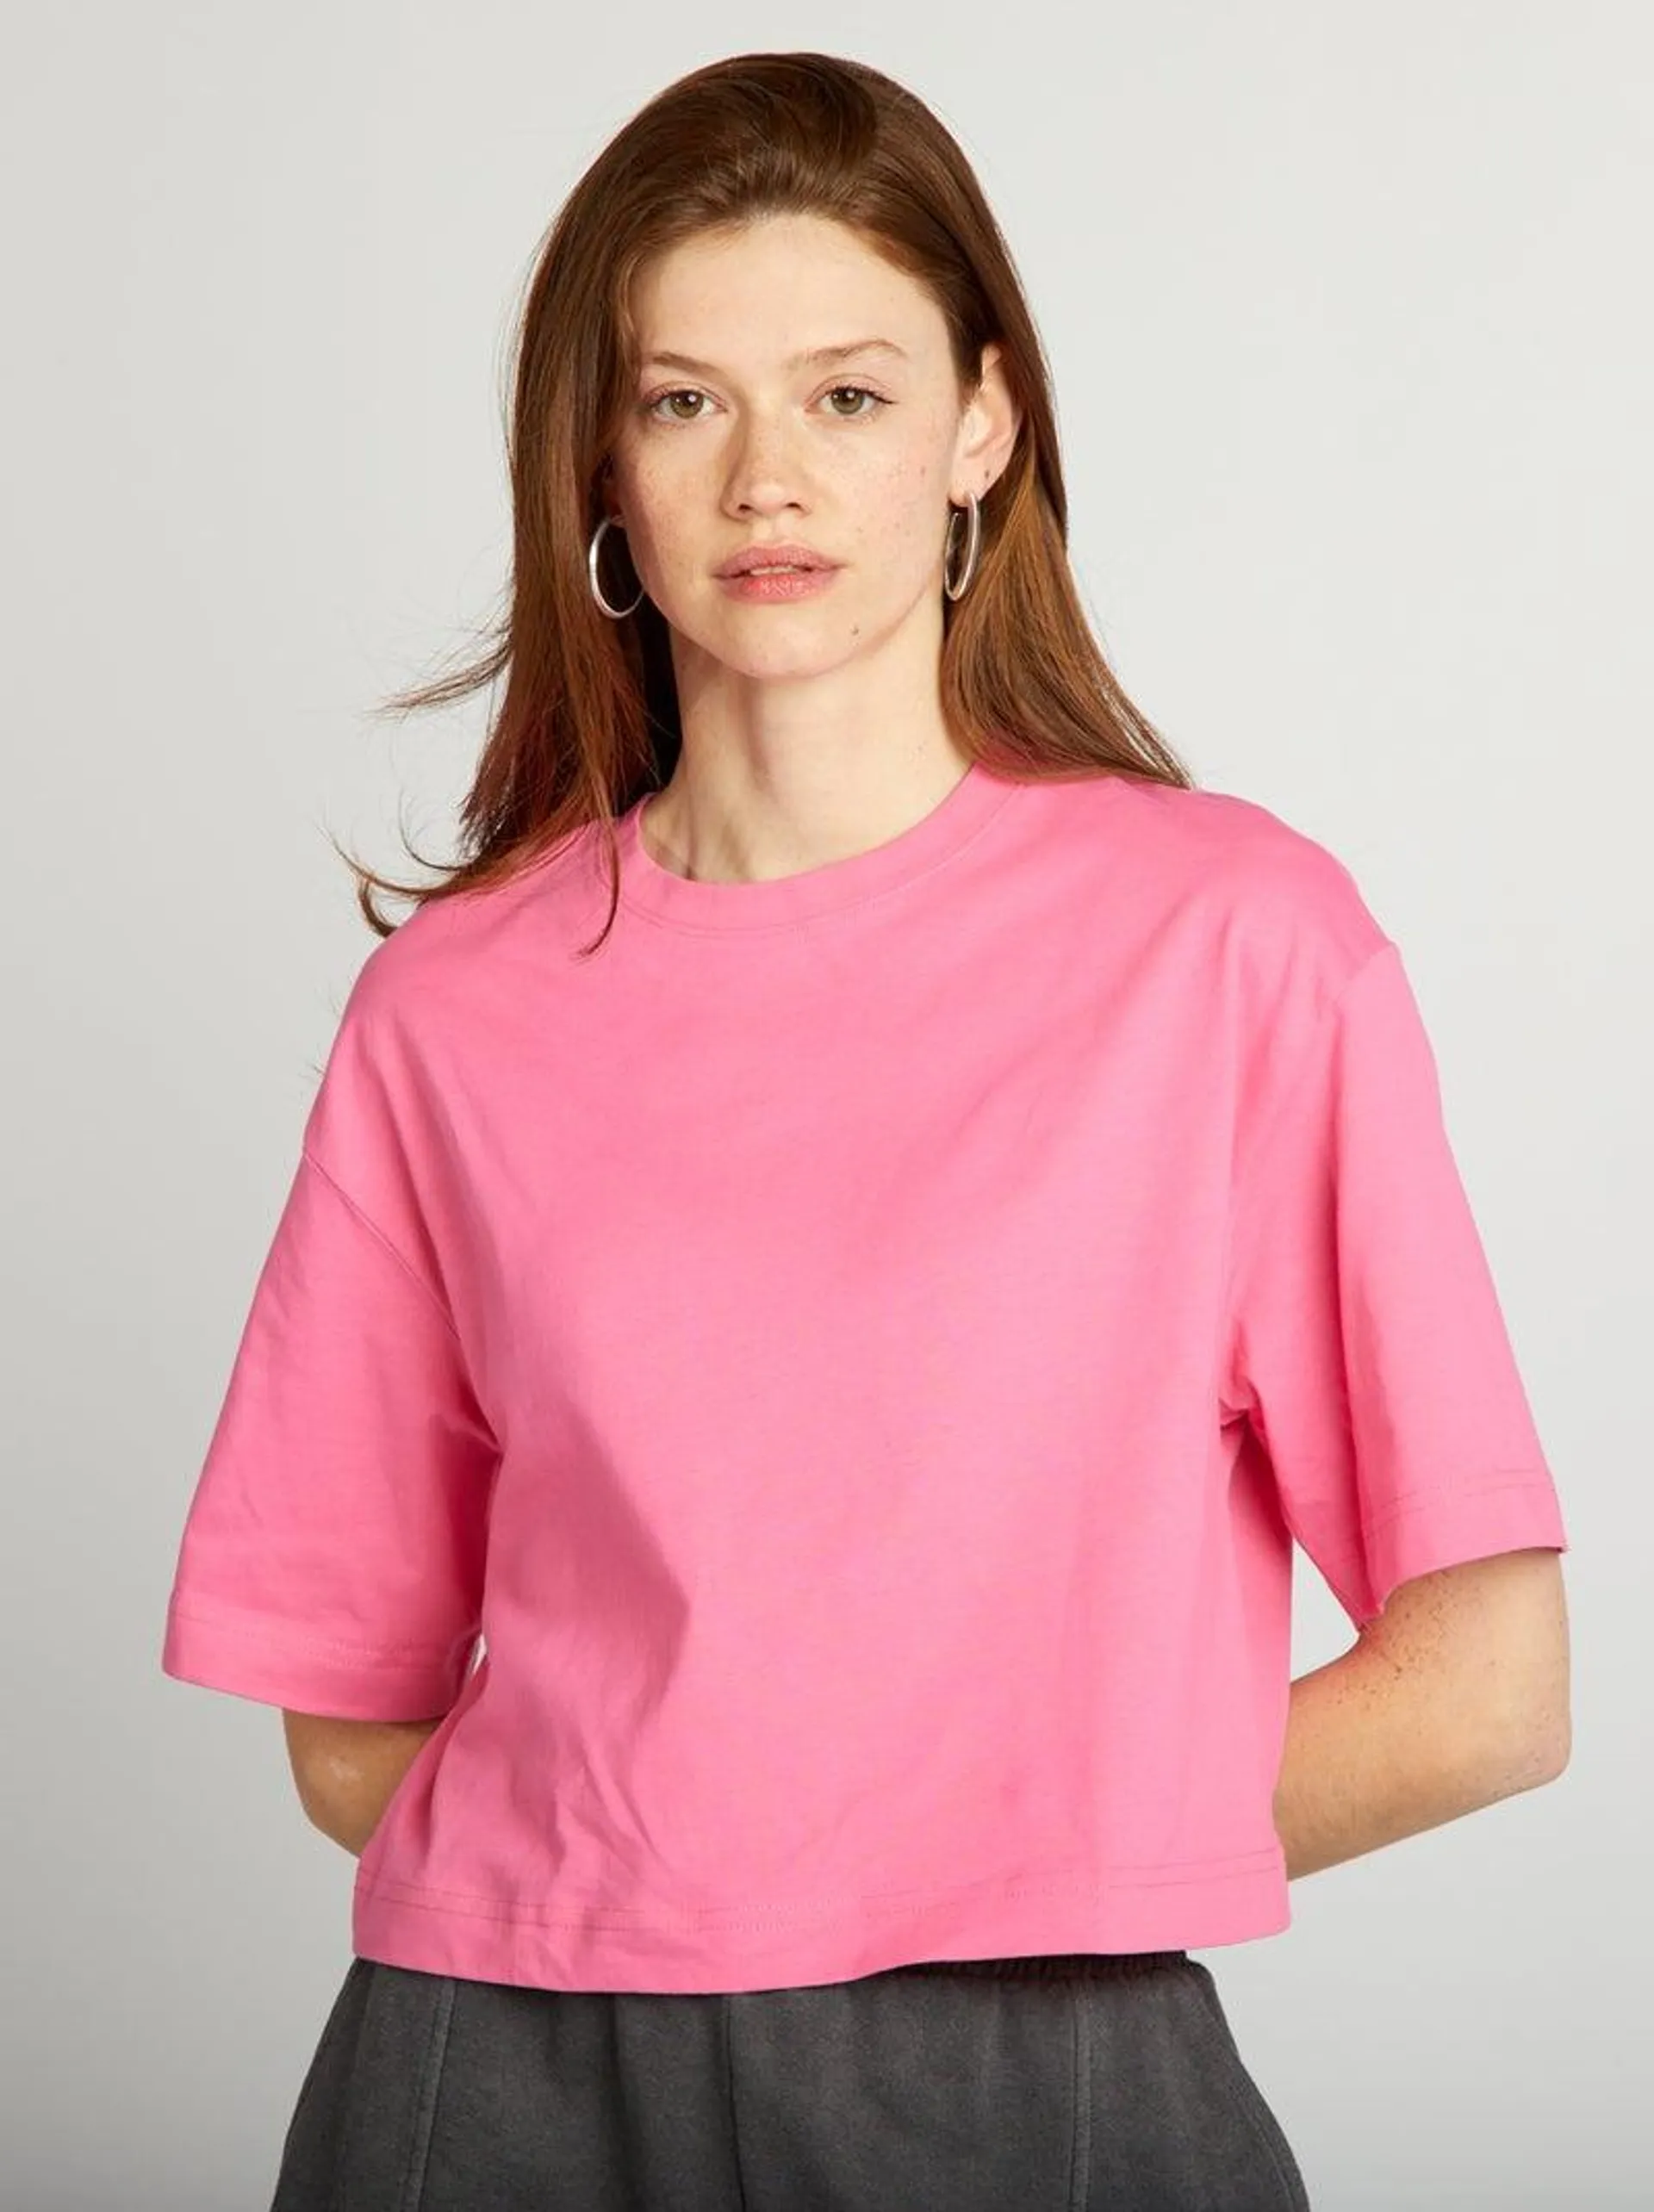 T-shirt crop top larga - Rosa